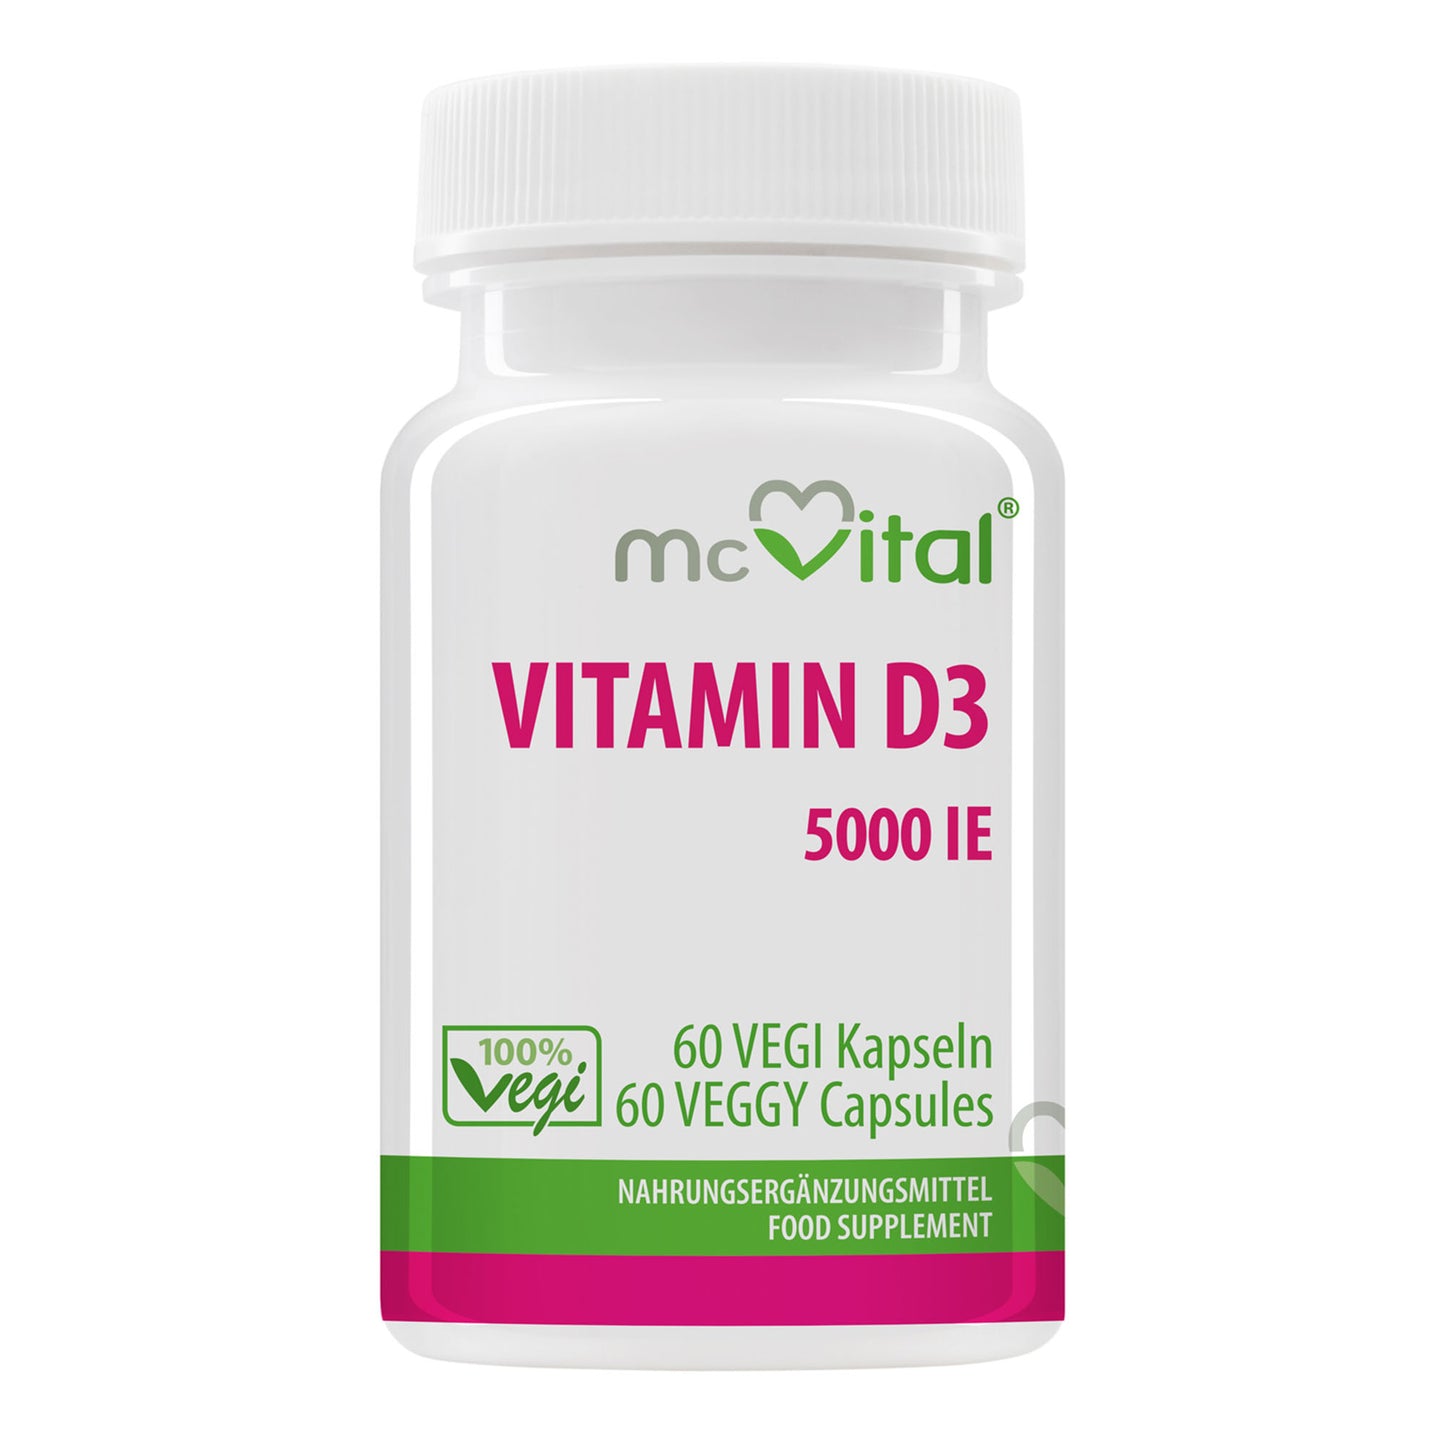 Vitamin D3 5000 I.E. Depot - 60 vegane Kapseln